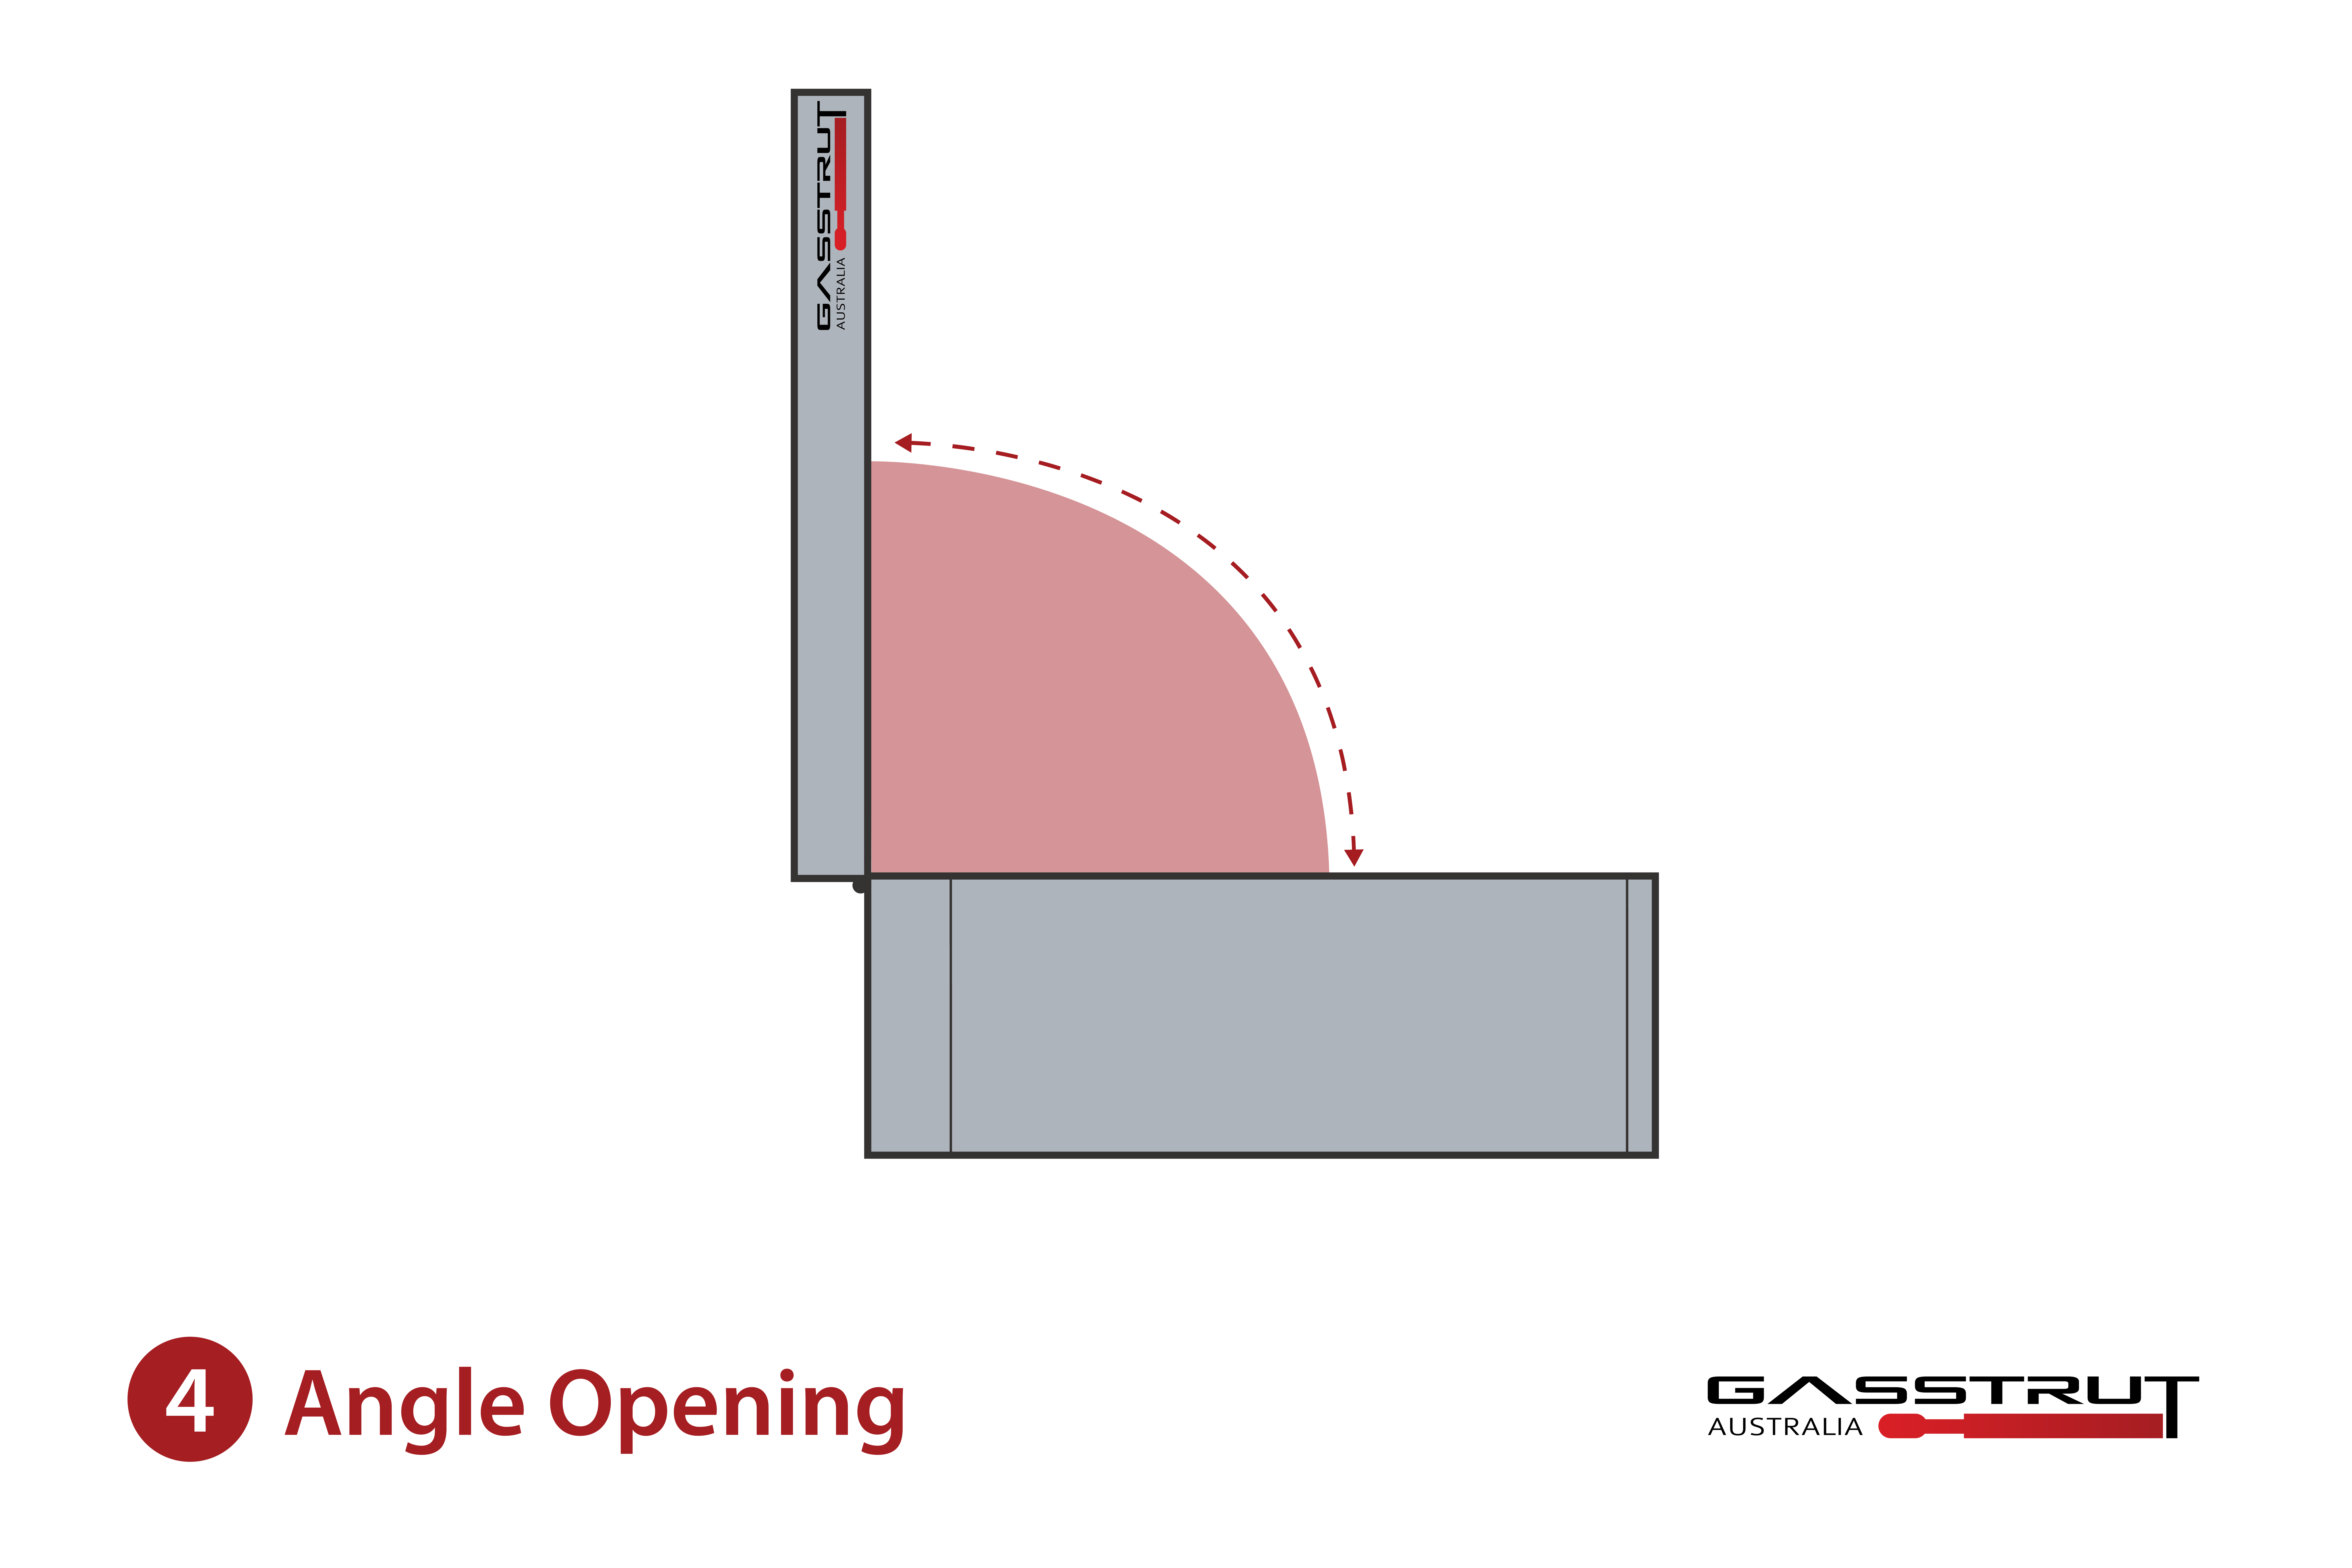 GS_Horizontal_Lift_Angle Opening